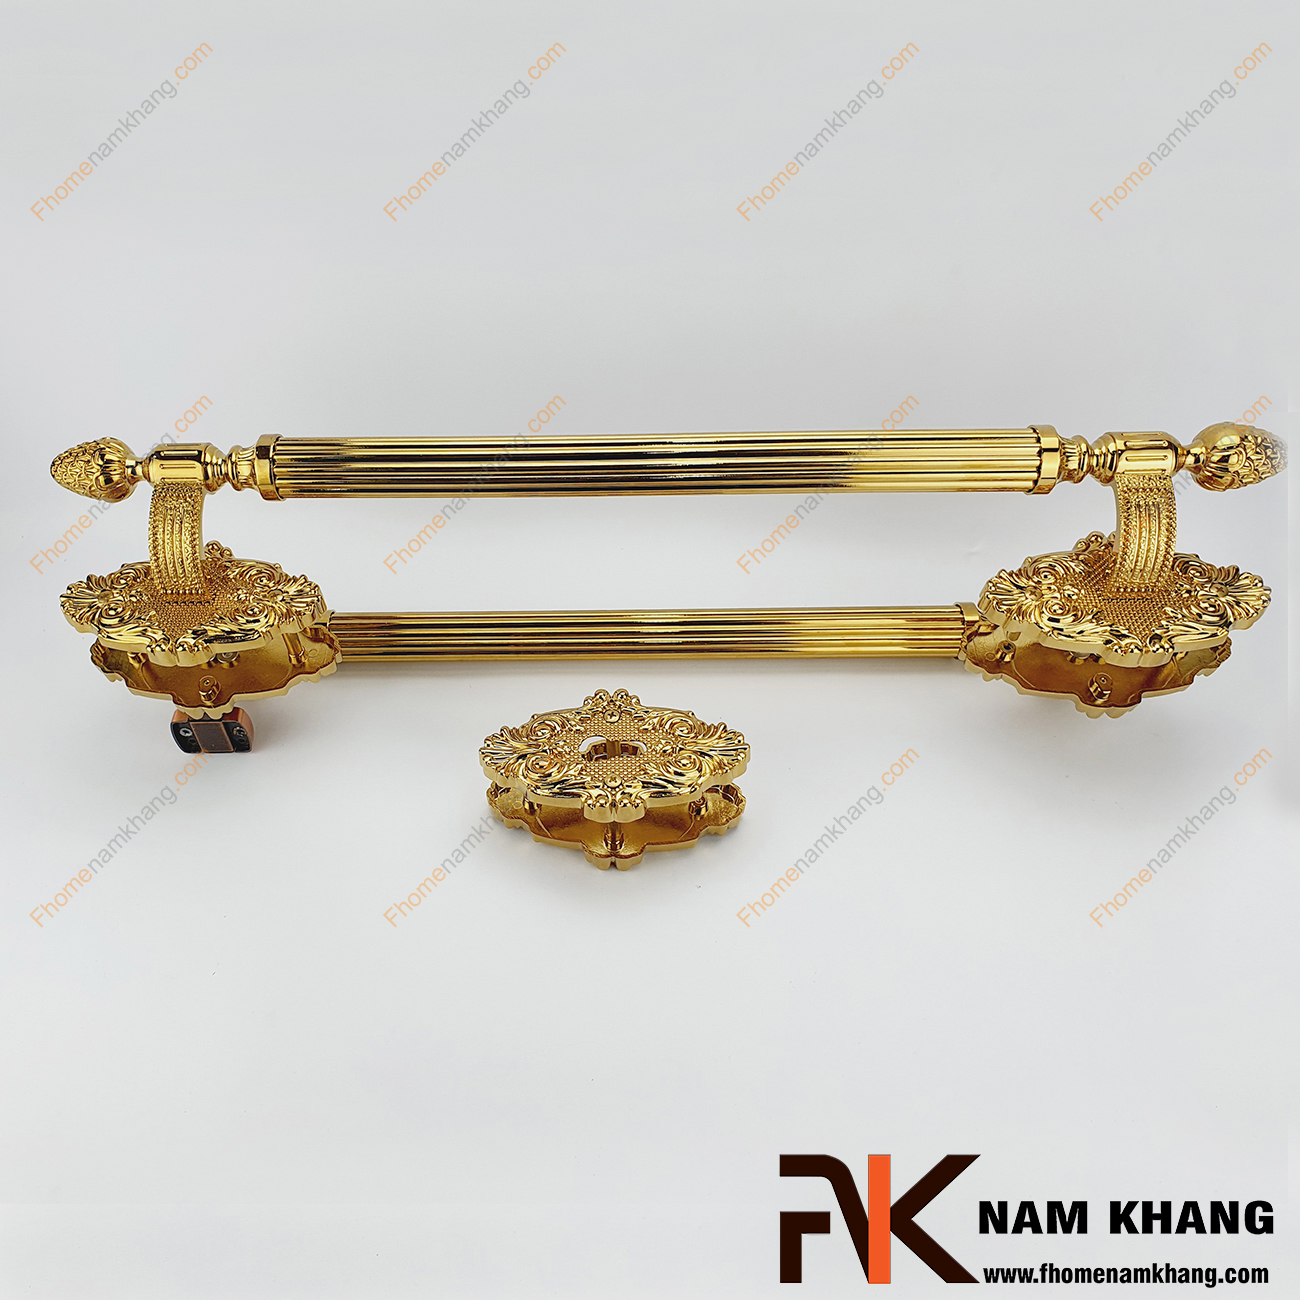 Khóa cửa sảnh phối hợp màu đồng vàng NK362K-PVD được sản xuất từ đồng cao cấp, với thiết kế đặc trưng khi kết hợp dòng khóa thân rời và tay nắm cửa sảnh lớn.